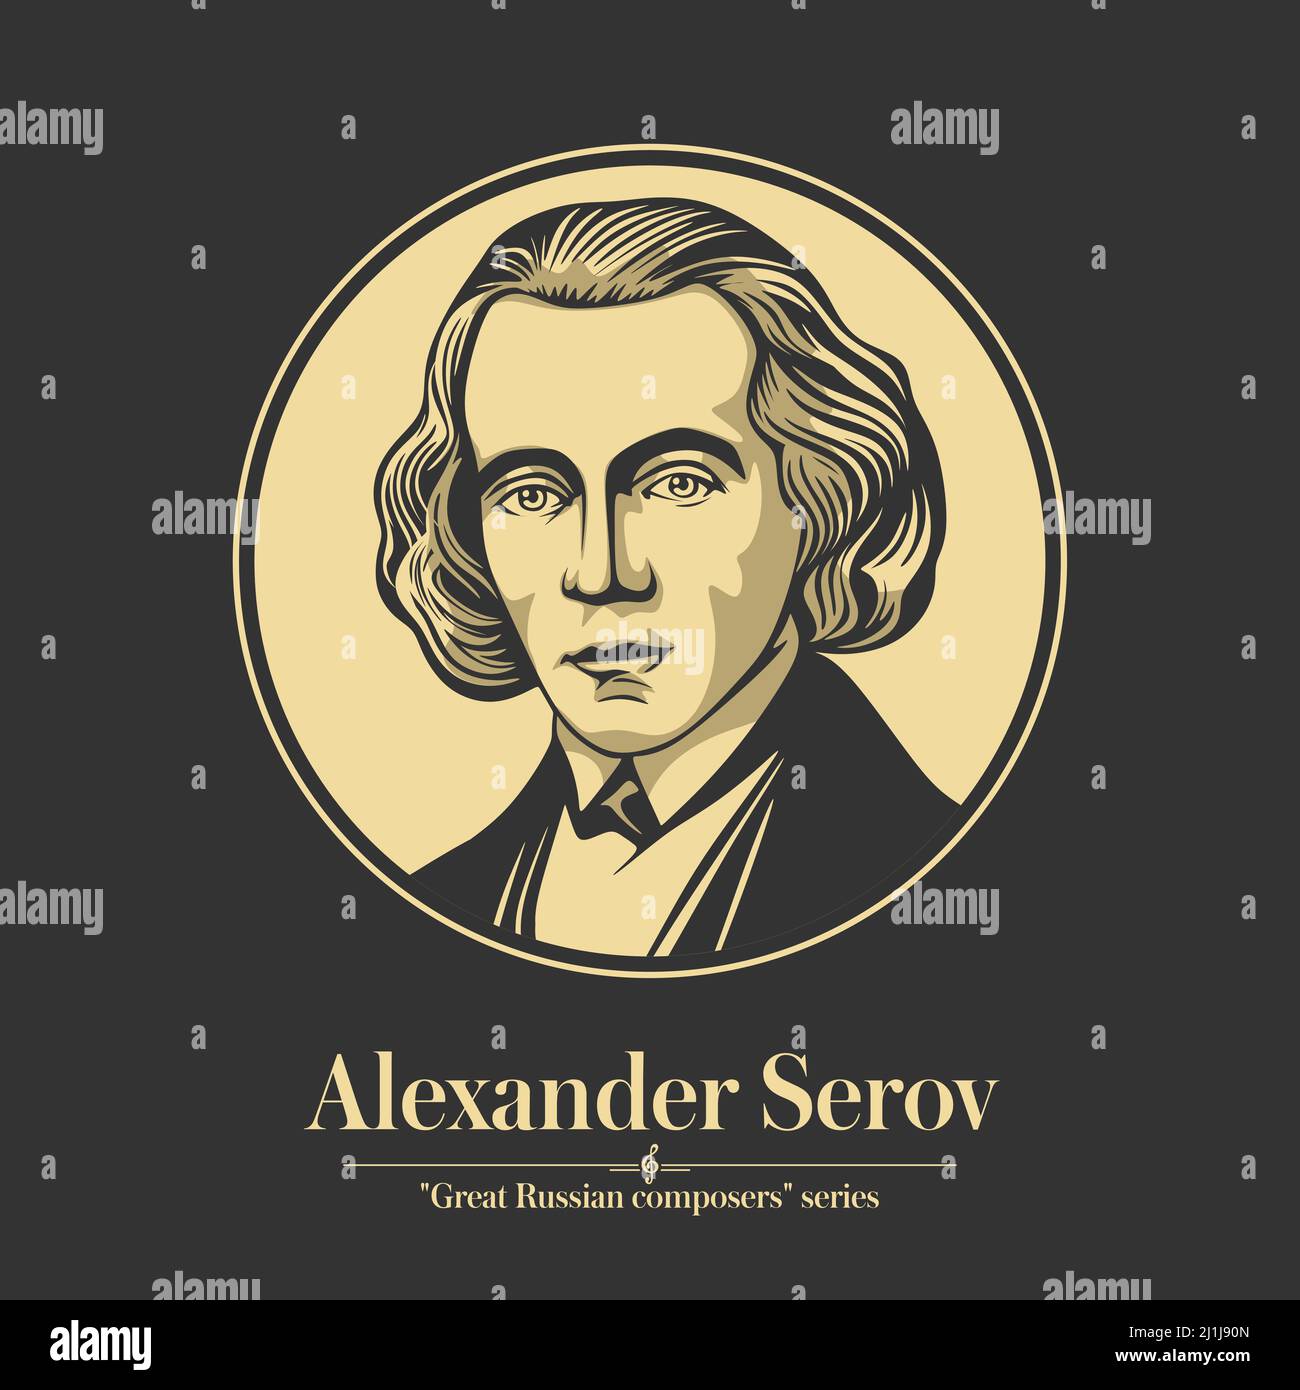 Grande compositore russo. Alexander Serov era un compositore russo e critico musicale. È notevole come uno dei più importanti critici musicali in Russia du Illustrazione Vettoriale